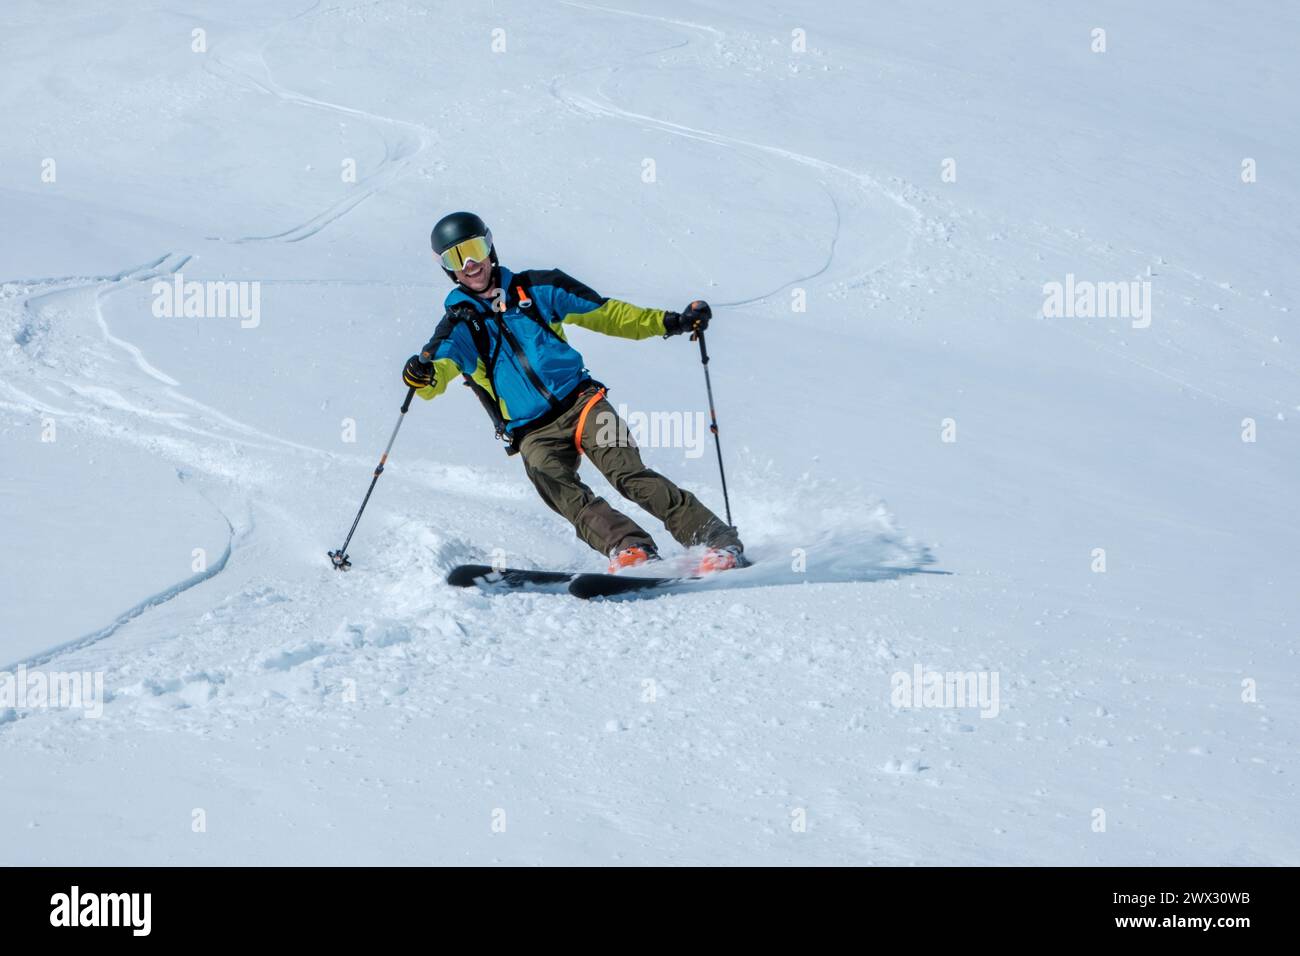 skier on ski tour downhill in powder snow Stock Photo